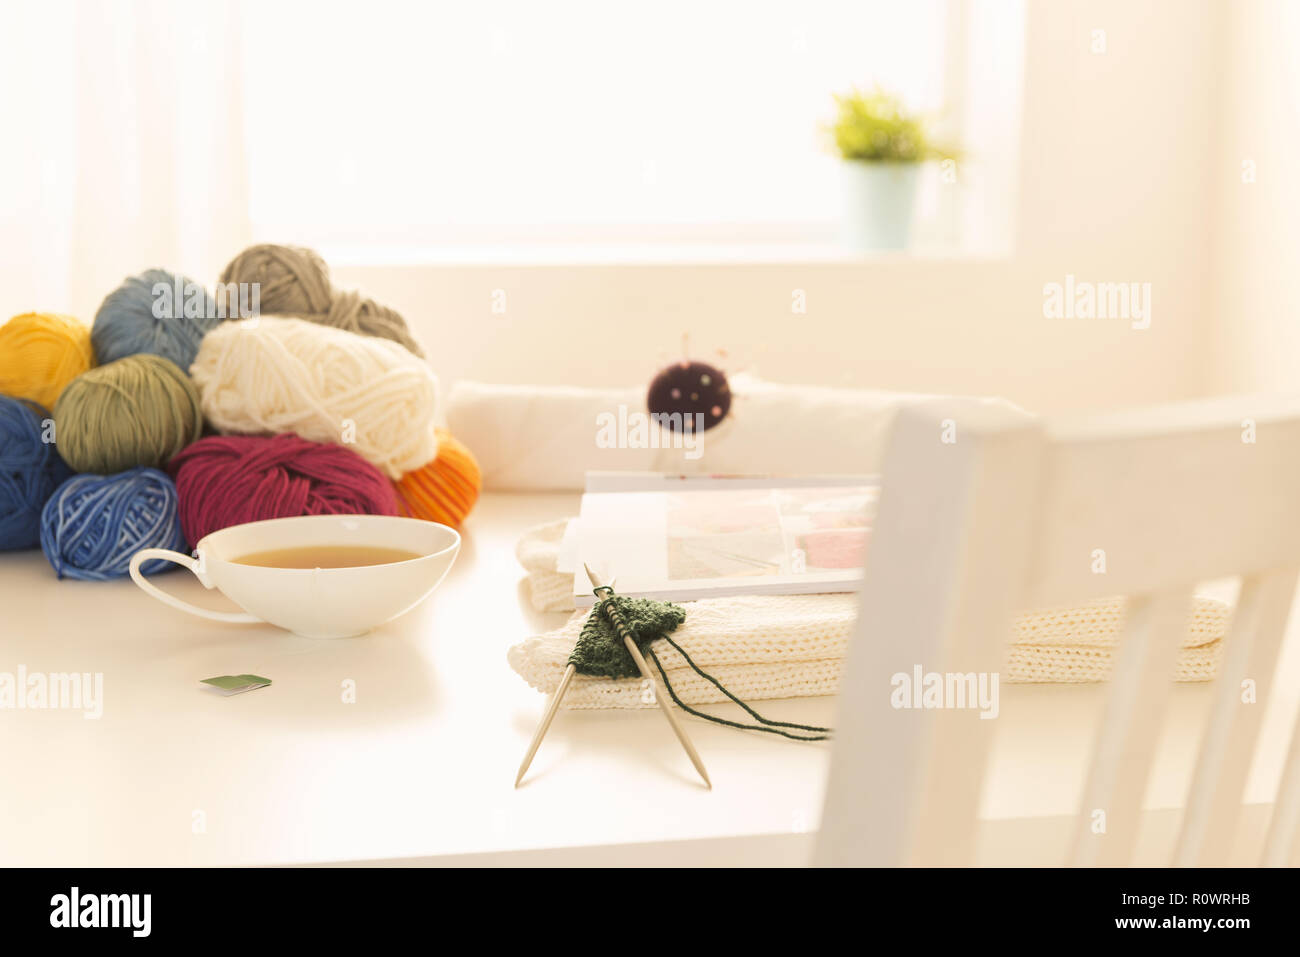 Wolle, Stricknadeln und Teetasse auf einem Tisch Stock Photo